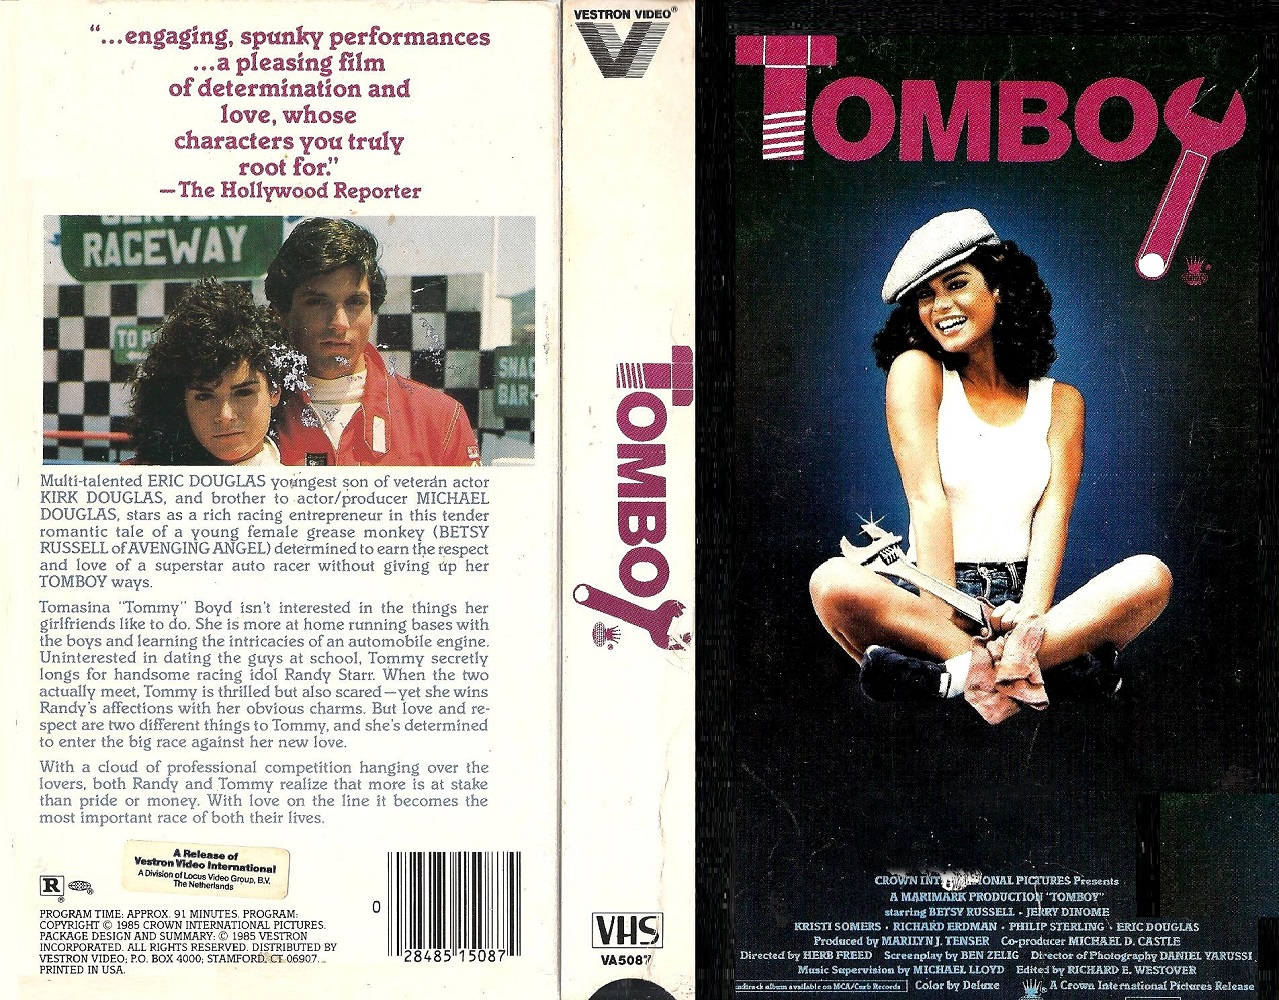 Tomboy 1985